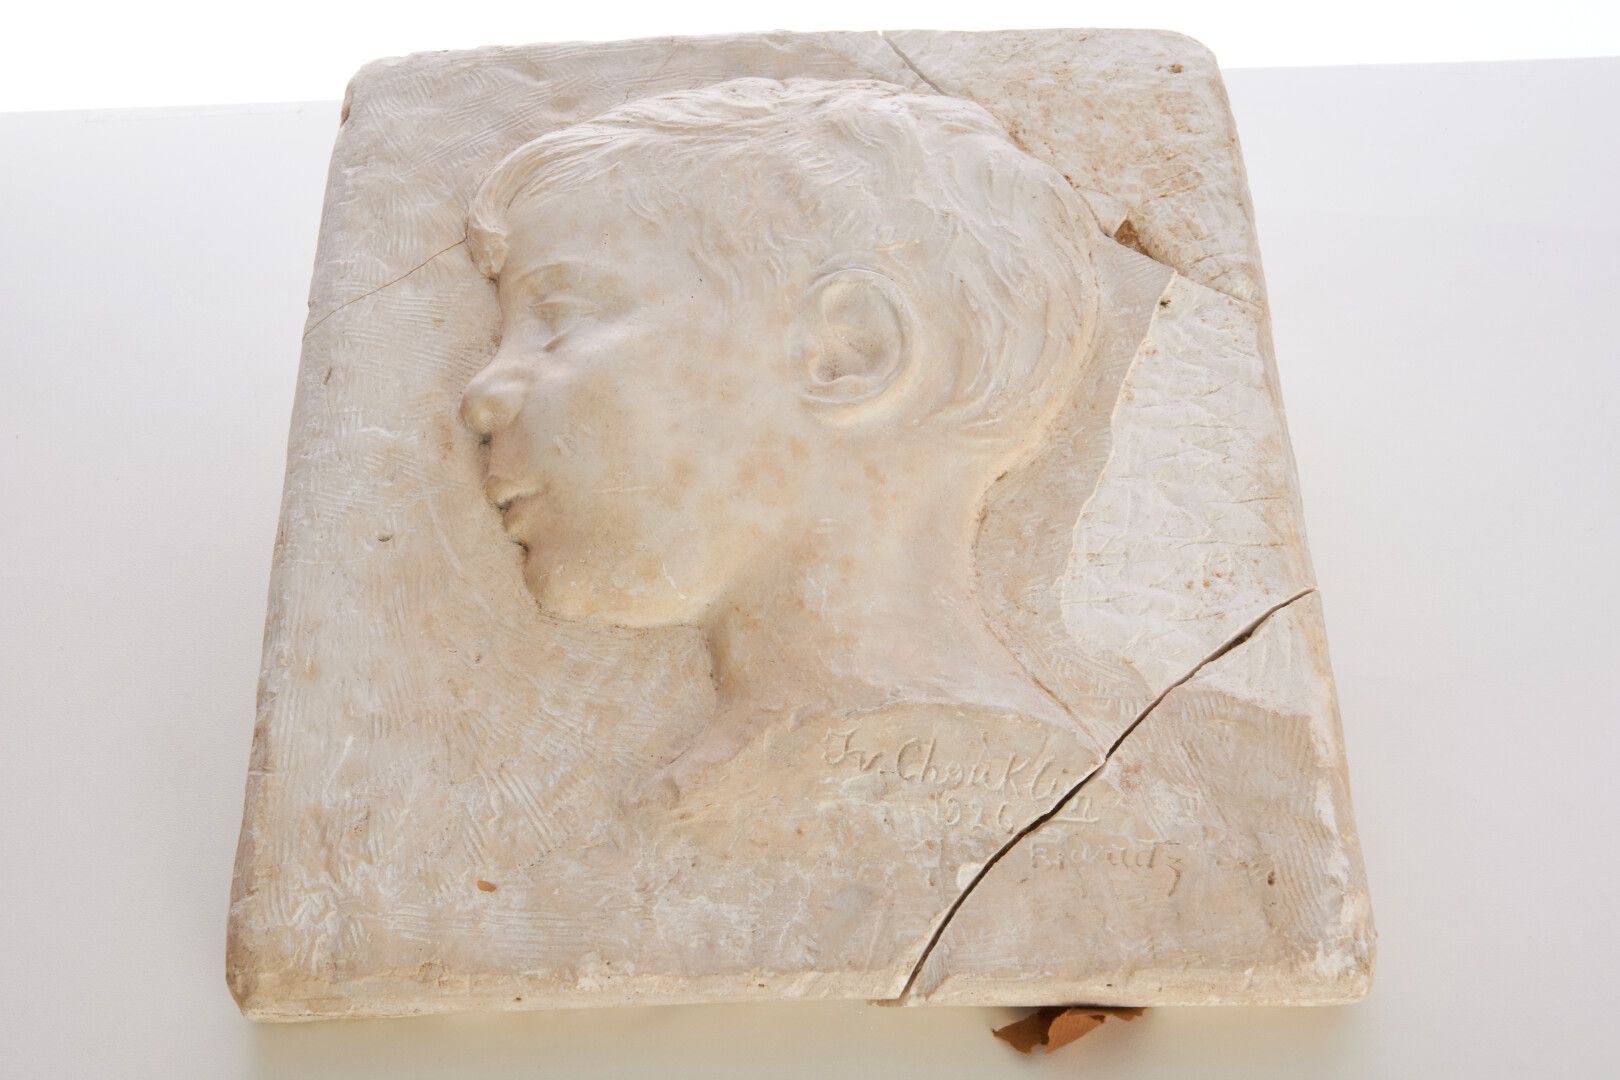 Null 丘克林-伊万 (1879-1958)

"小男孩的肖像 "石膏浮雕-31x27（非常损坏）。